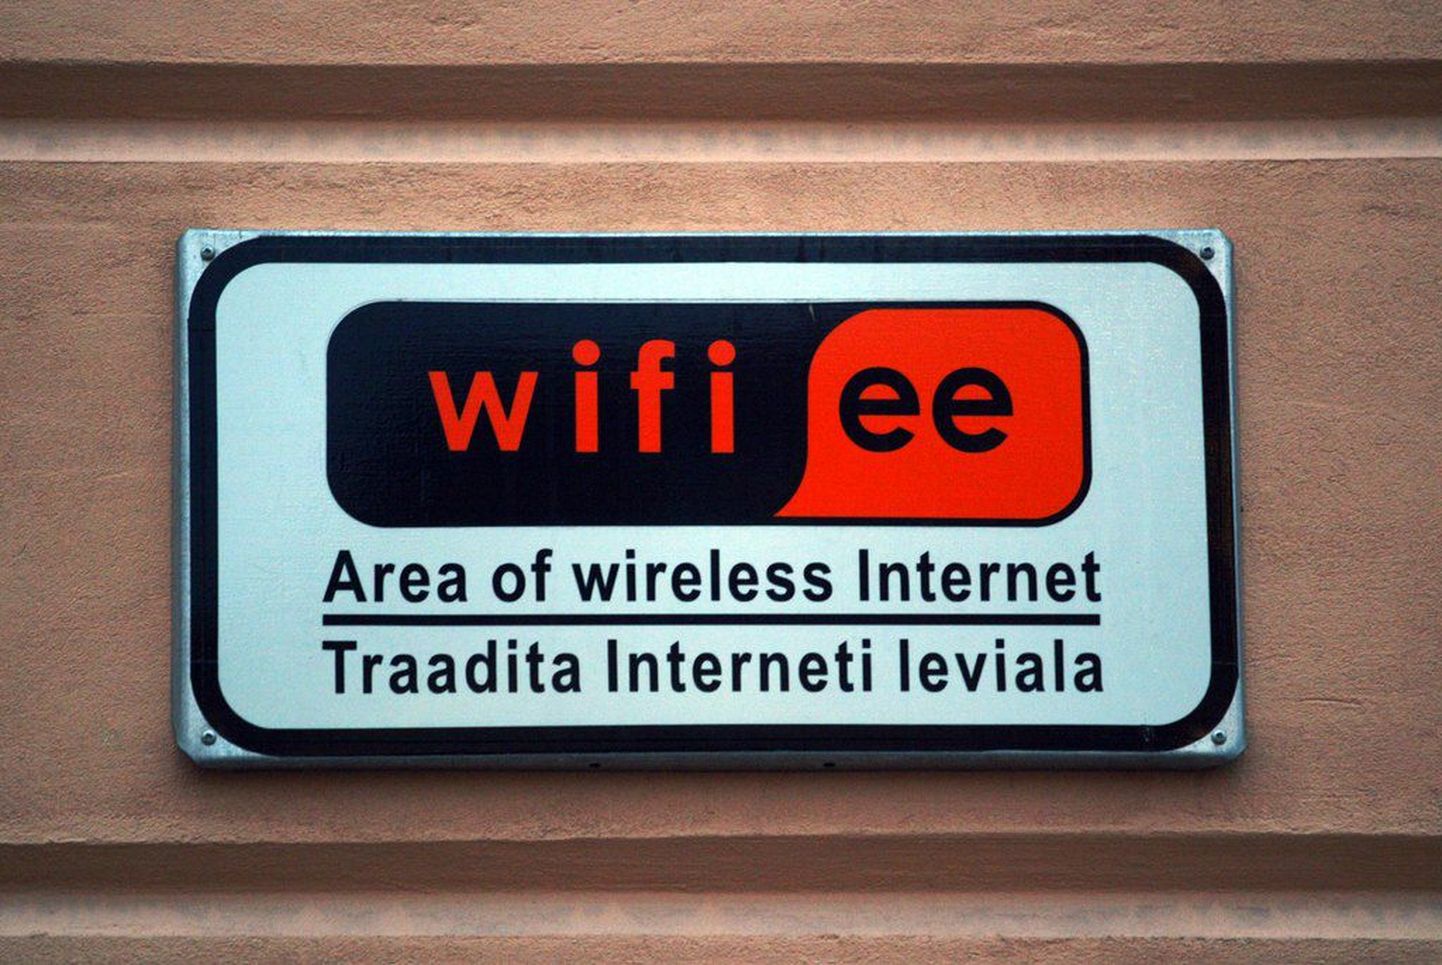 Pildil märk, mis annab teada traadita interneti levialast Eestis.